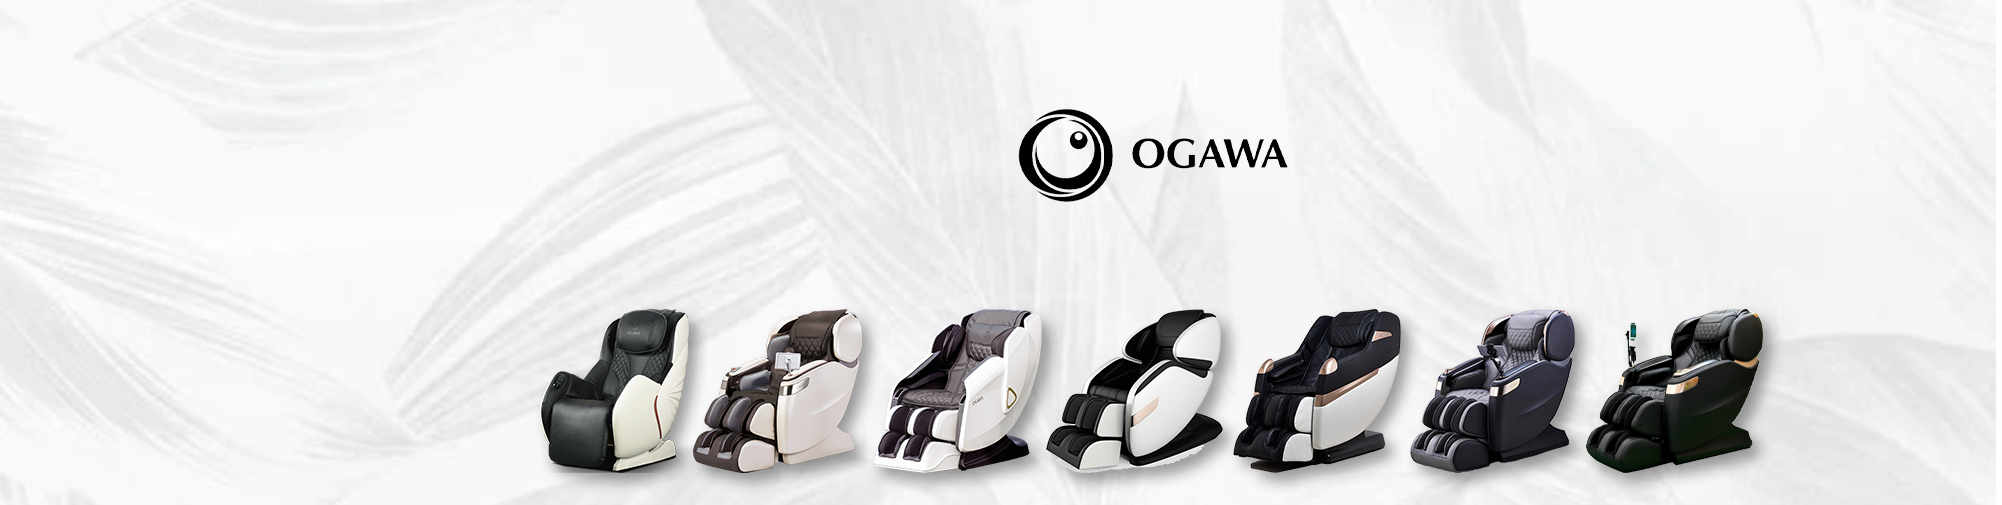 OGAWA | Massagesessel Welt